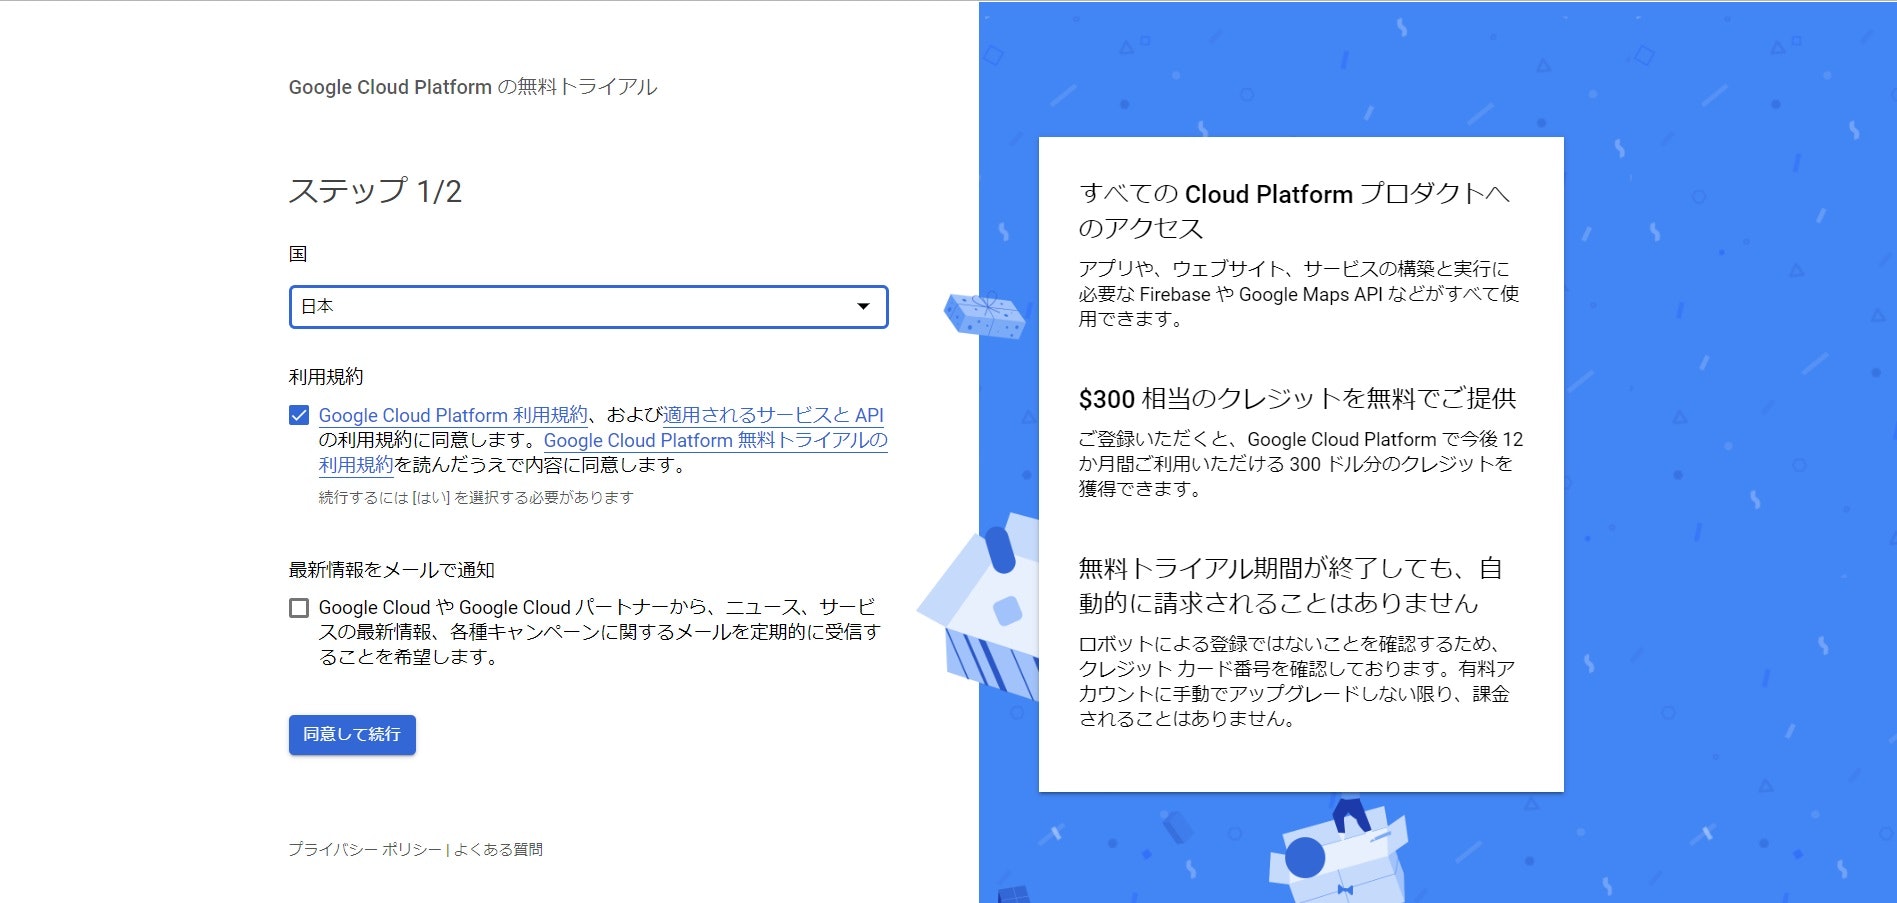 クラウド コンピューティング サービス  _  Google Cloud - Google Chrome 2019_08_15 16_32_10.jpg